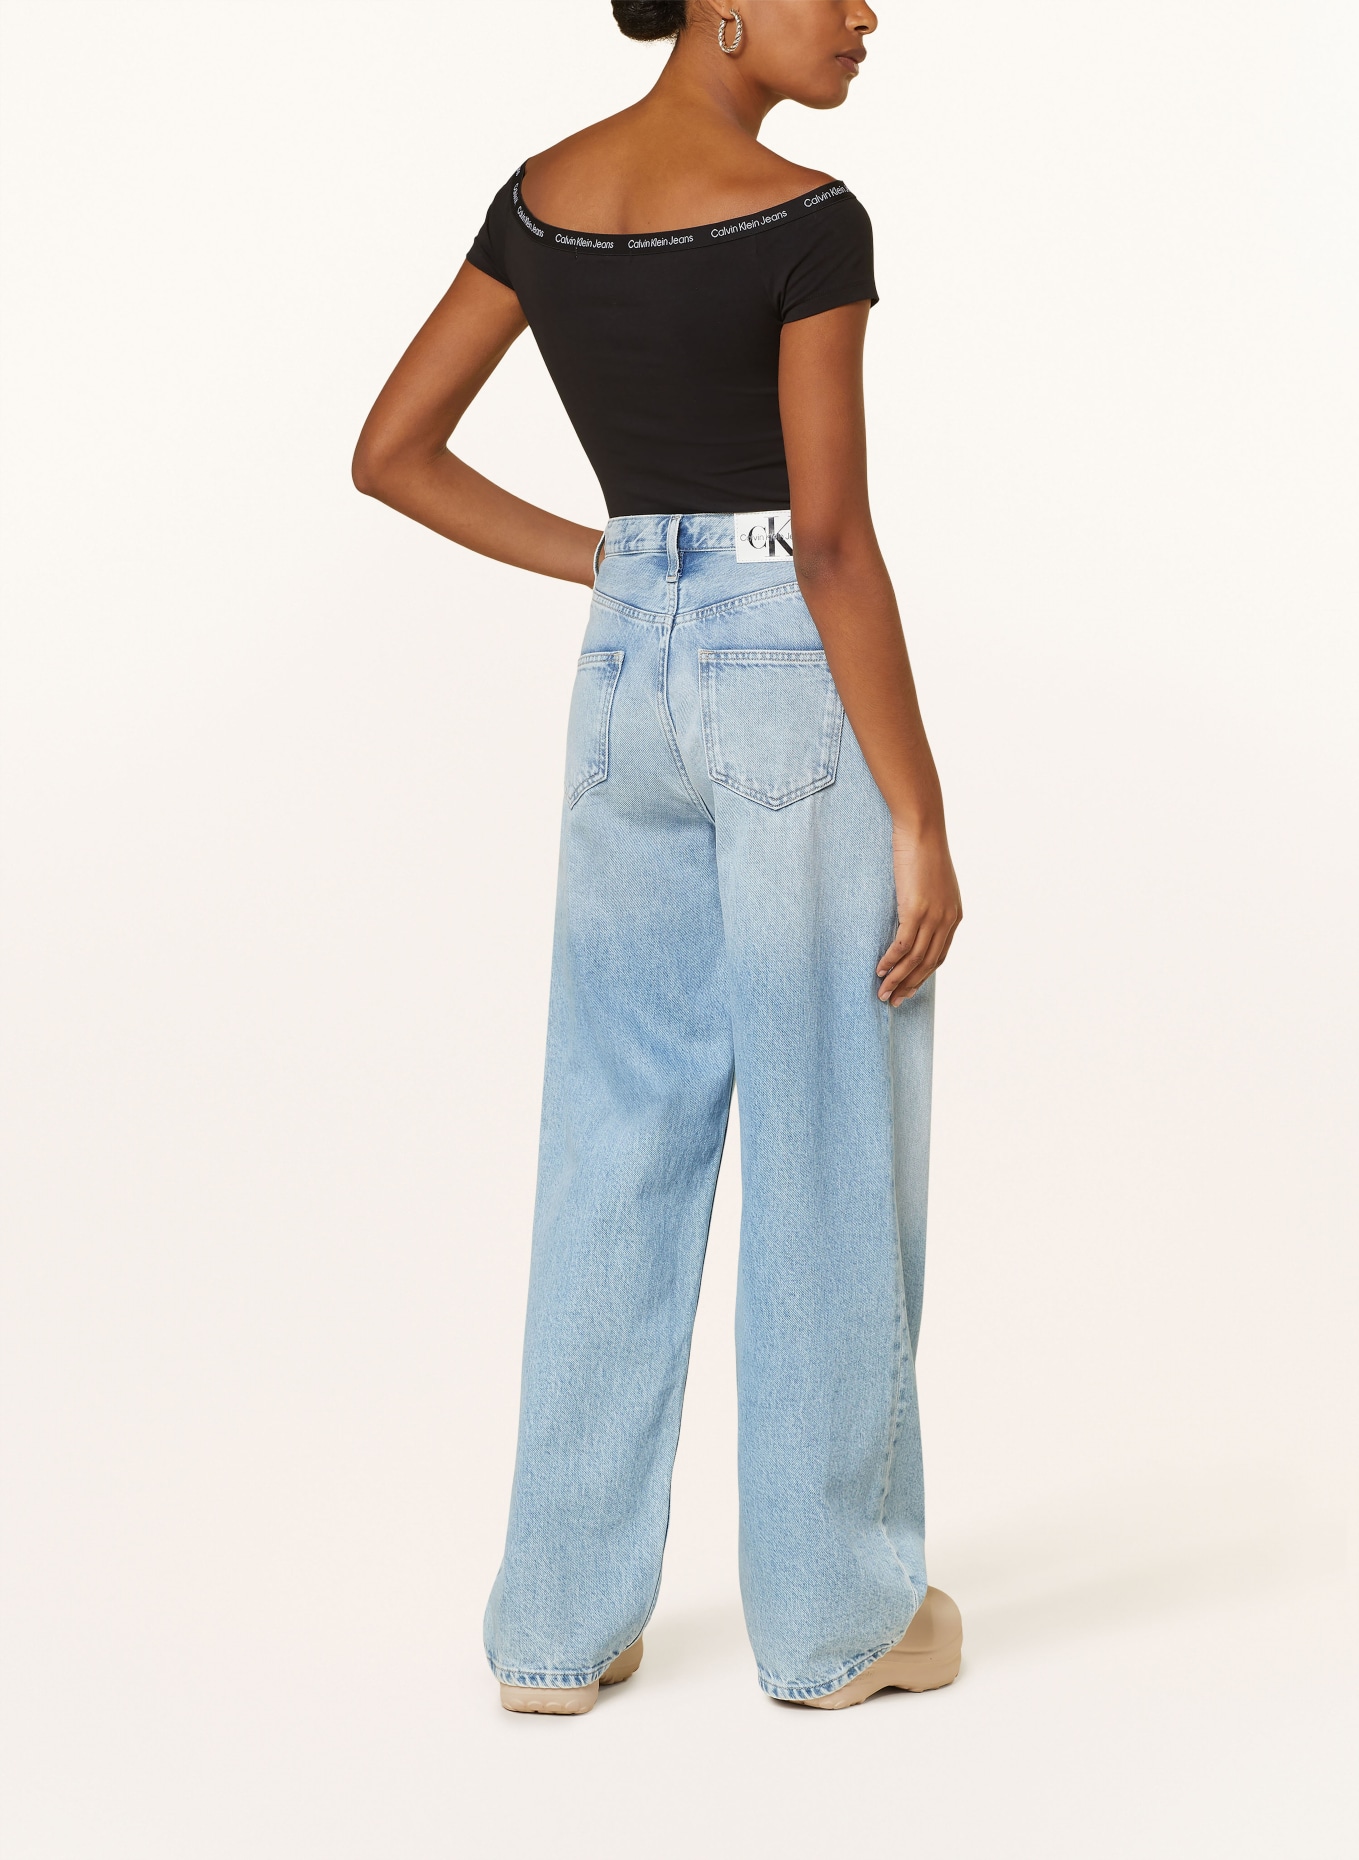 90s Calvin Klein Jeans オーバーオール Lサイズ - パンツ